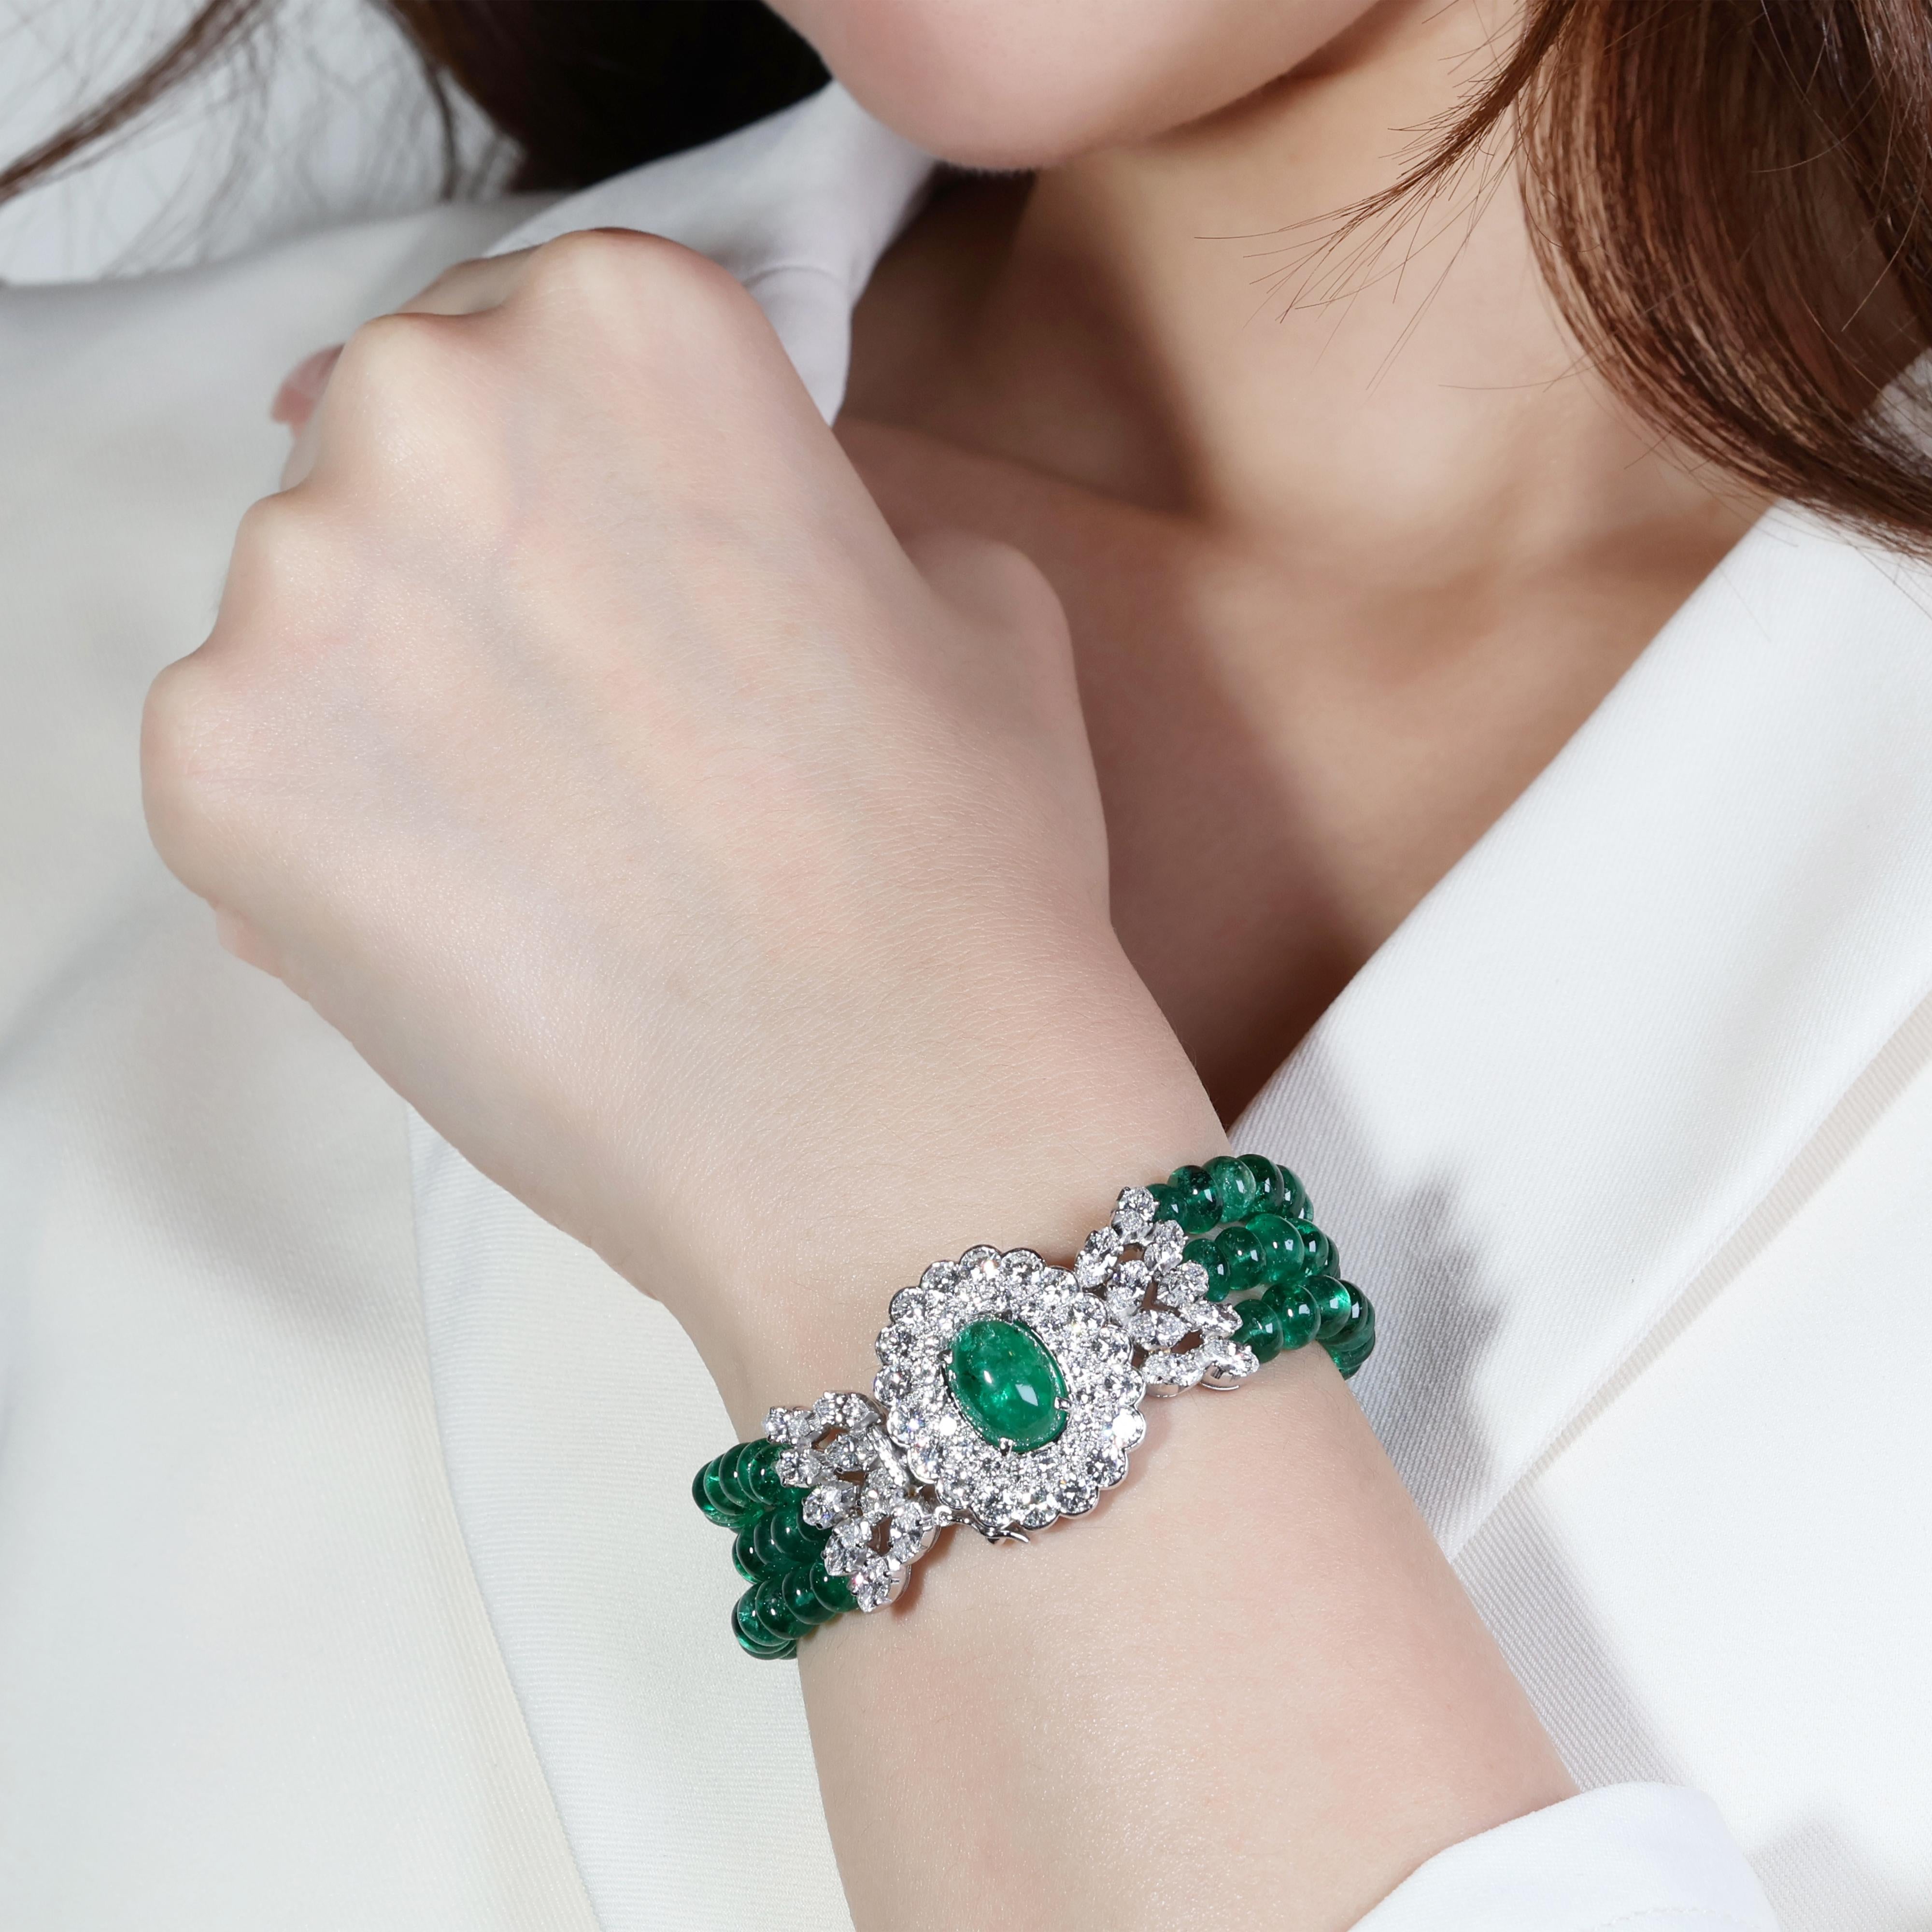 Dieses exquisite Armband besticht durch seine Smaragde, Berylle und Diamanten, die sorgfältig in luxuriöses 18-Karat-Weißgold gefasst sind. Das Herzstück ist ein faszinierender Cabochon-Smaragd mit bemerkenswerten 4,76 Karat und einer intensiven